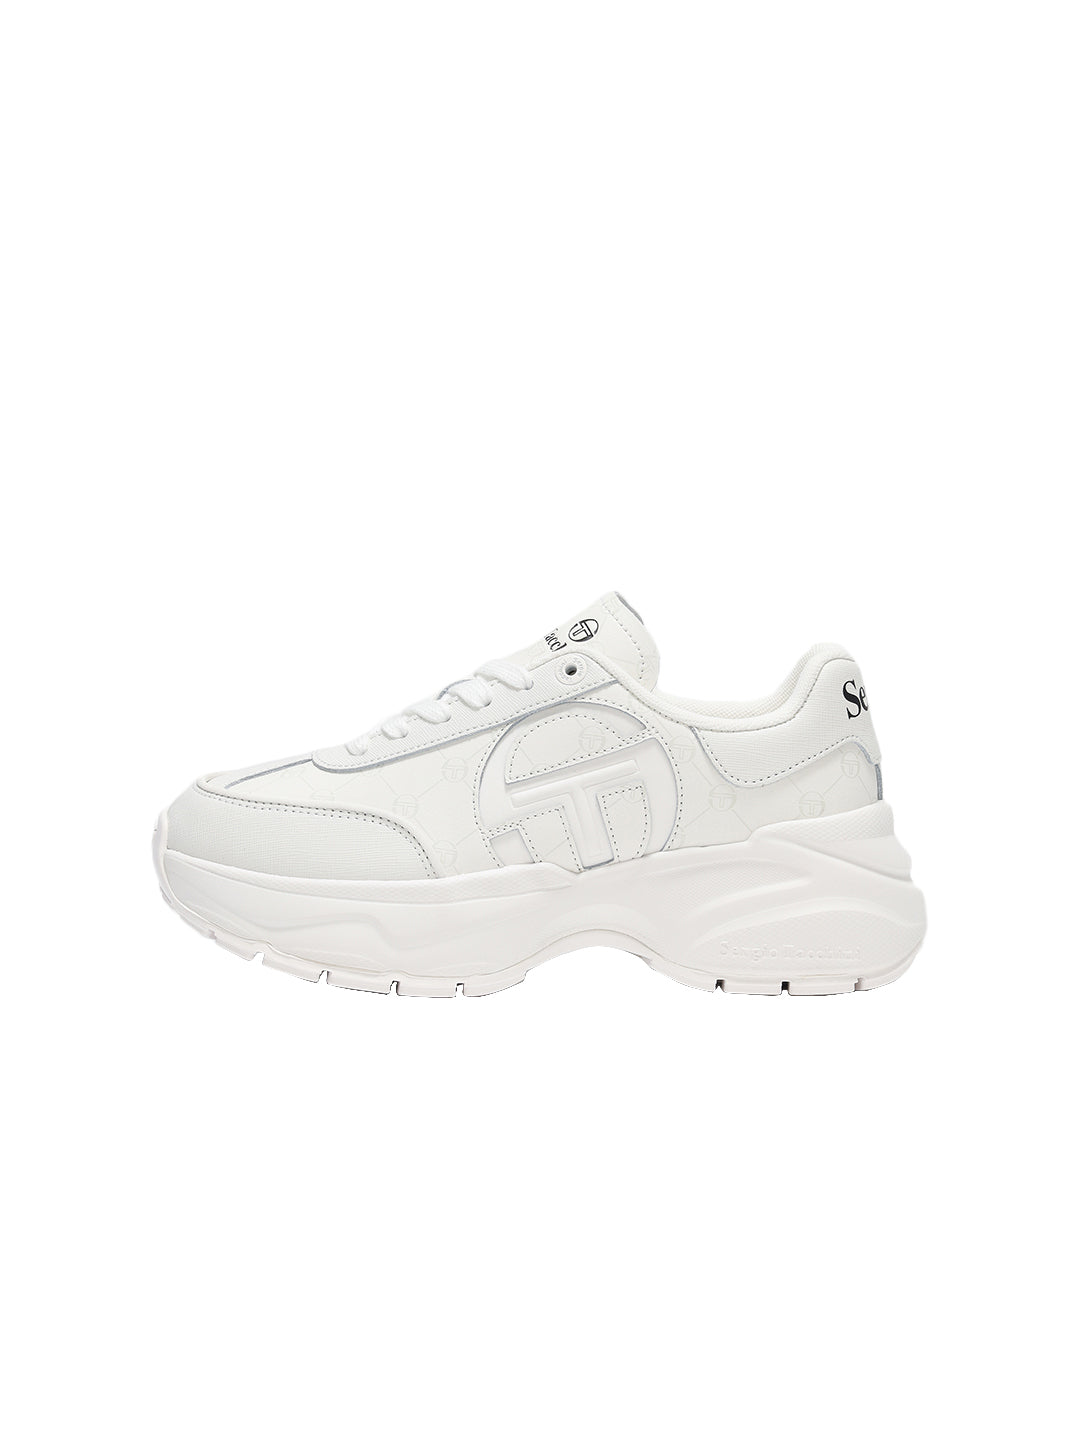 La Faccia Sneaker- Optical White